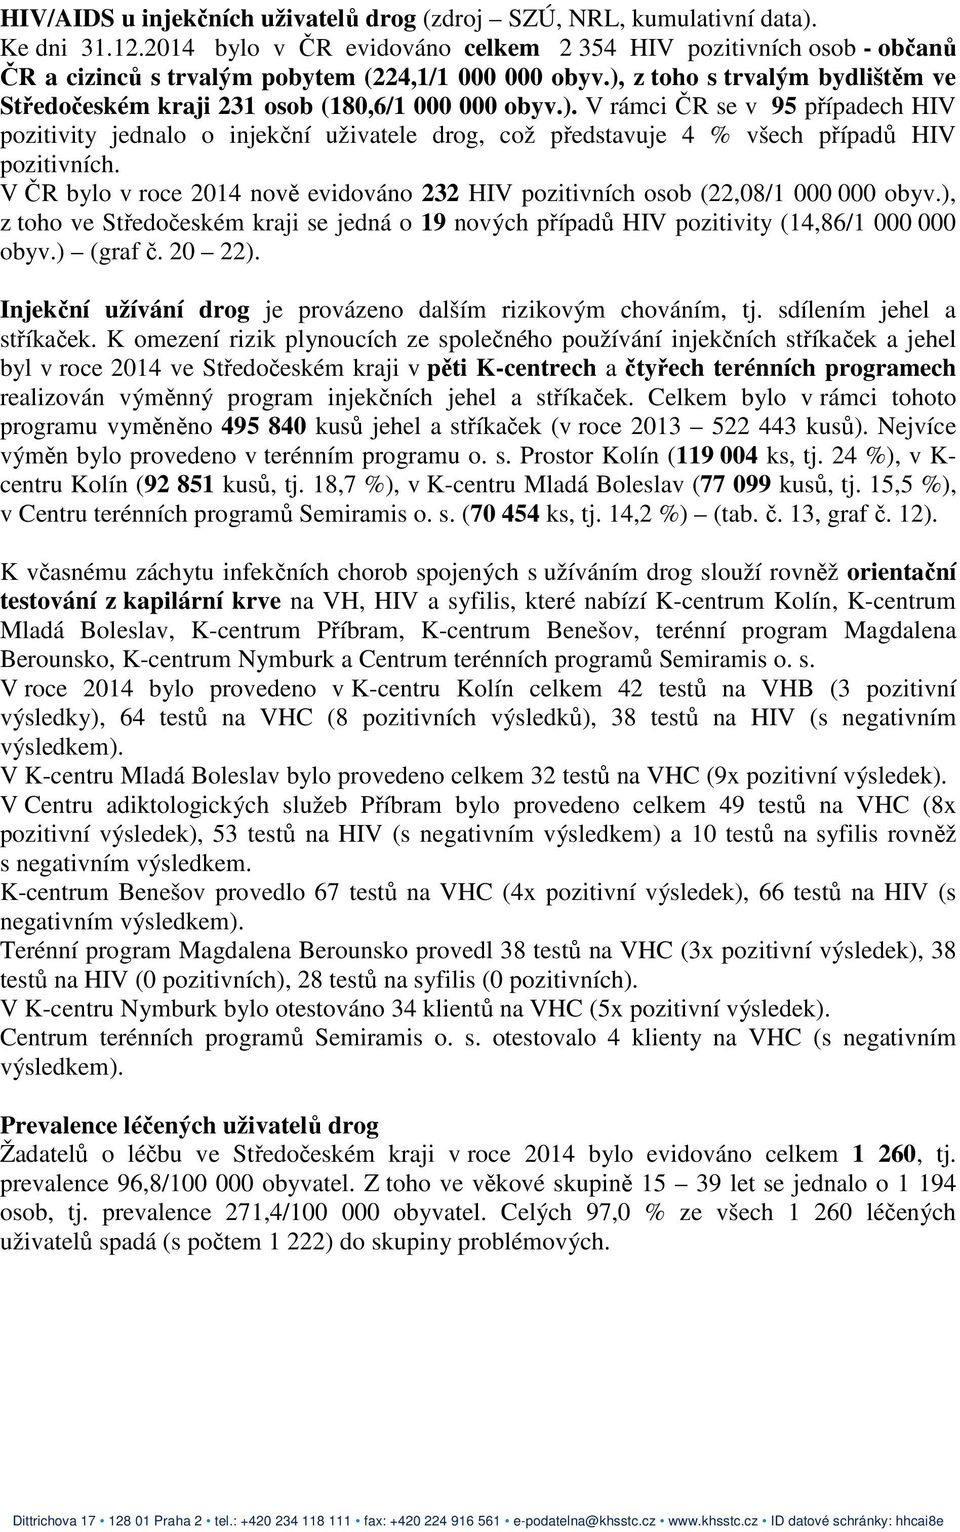 ), z toho s trvalým bydlištěm ve Středočeském kraji 231 osob (180,6/1 000 000 obyv.). V rámci ČR se v 95 případech HIV pozitivity jednalo o injekční uživatele drog, což představuje 4 % všech případů HIV pozitivních.